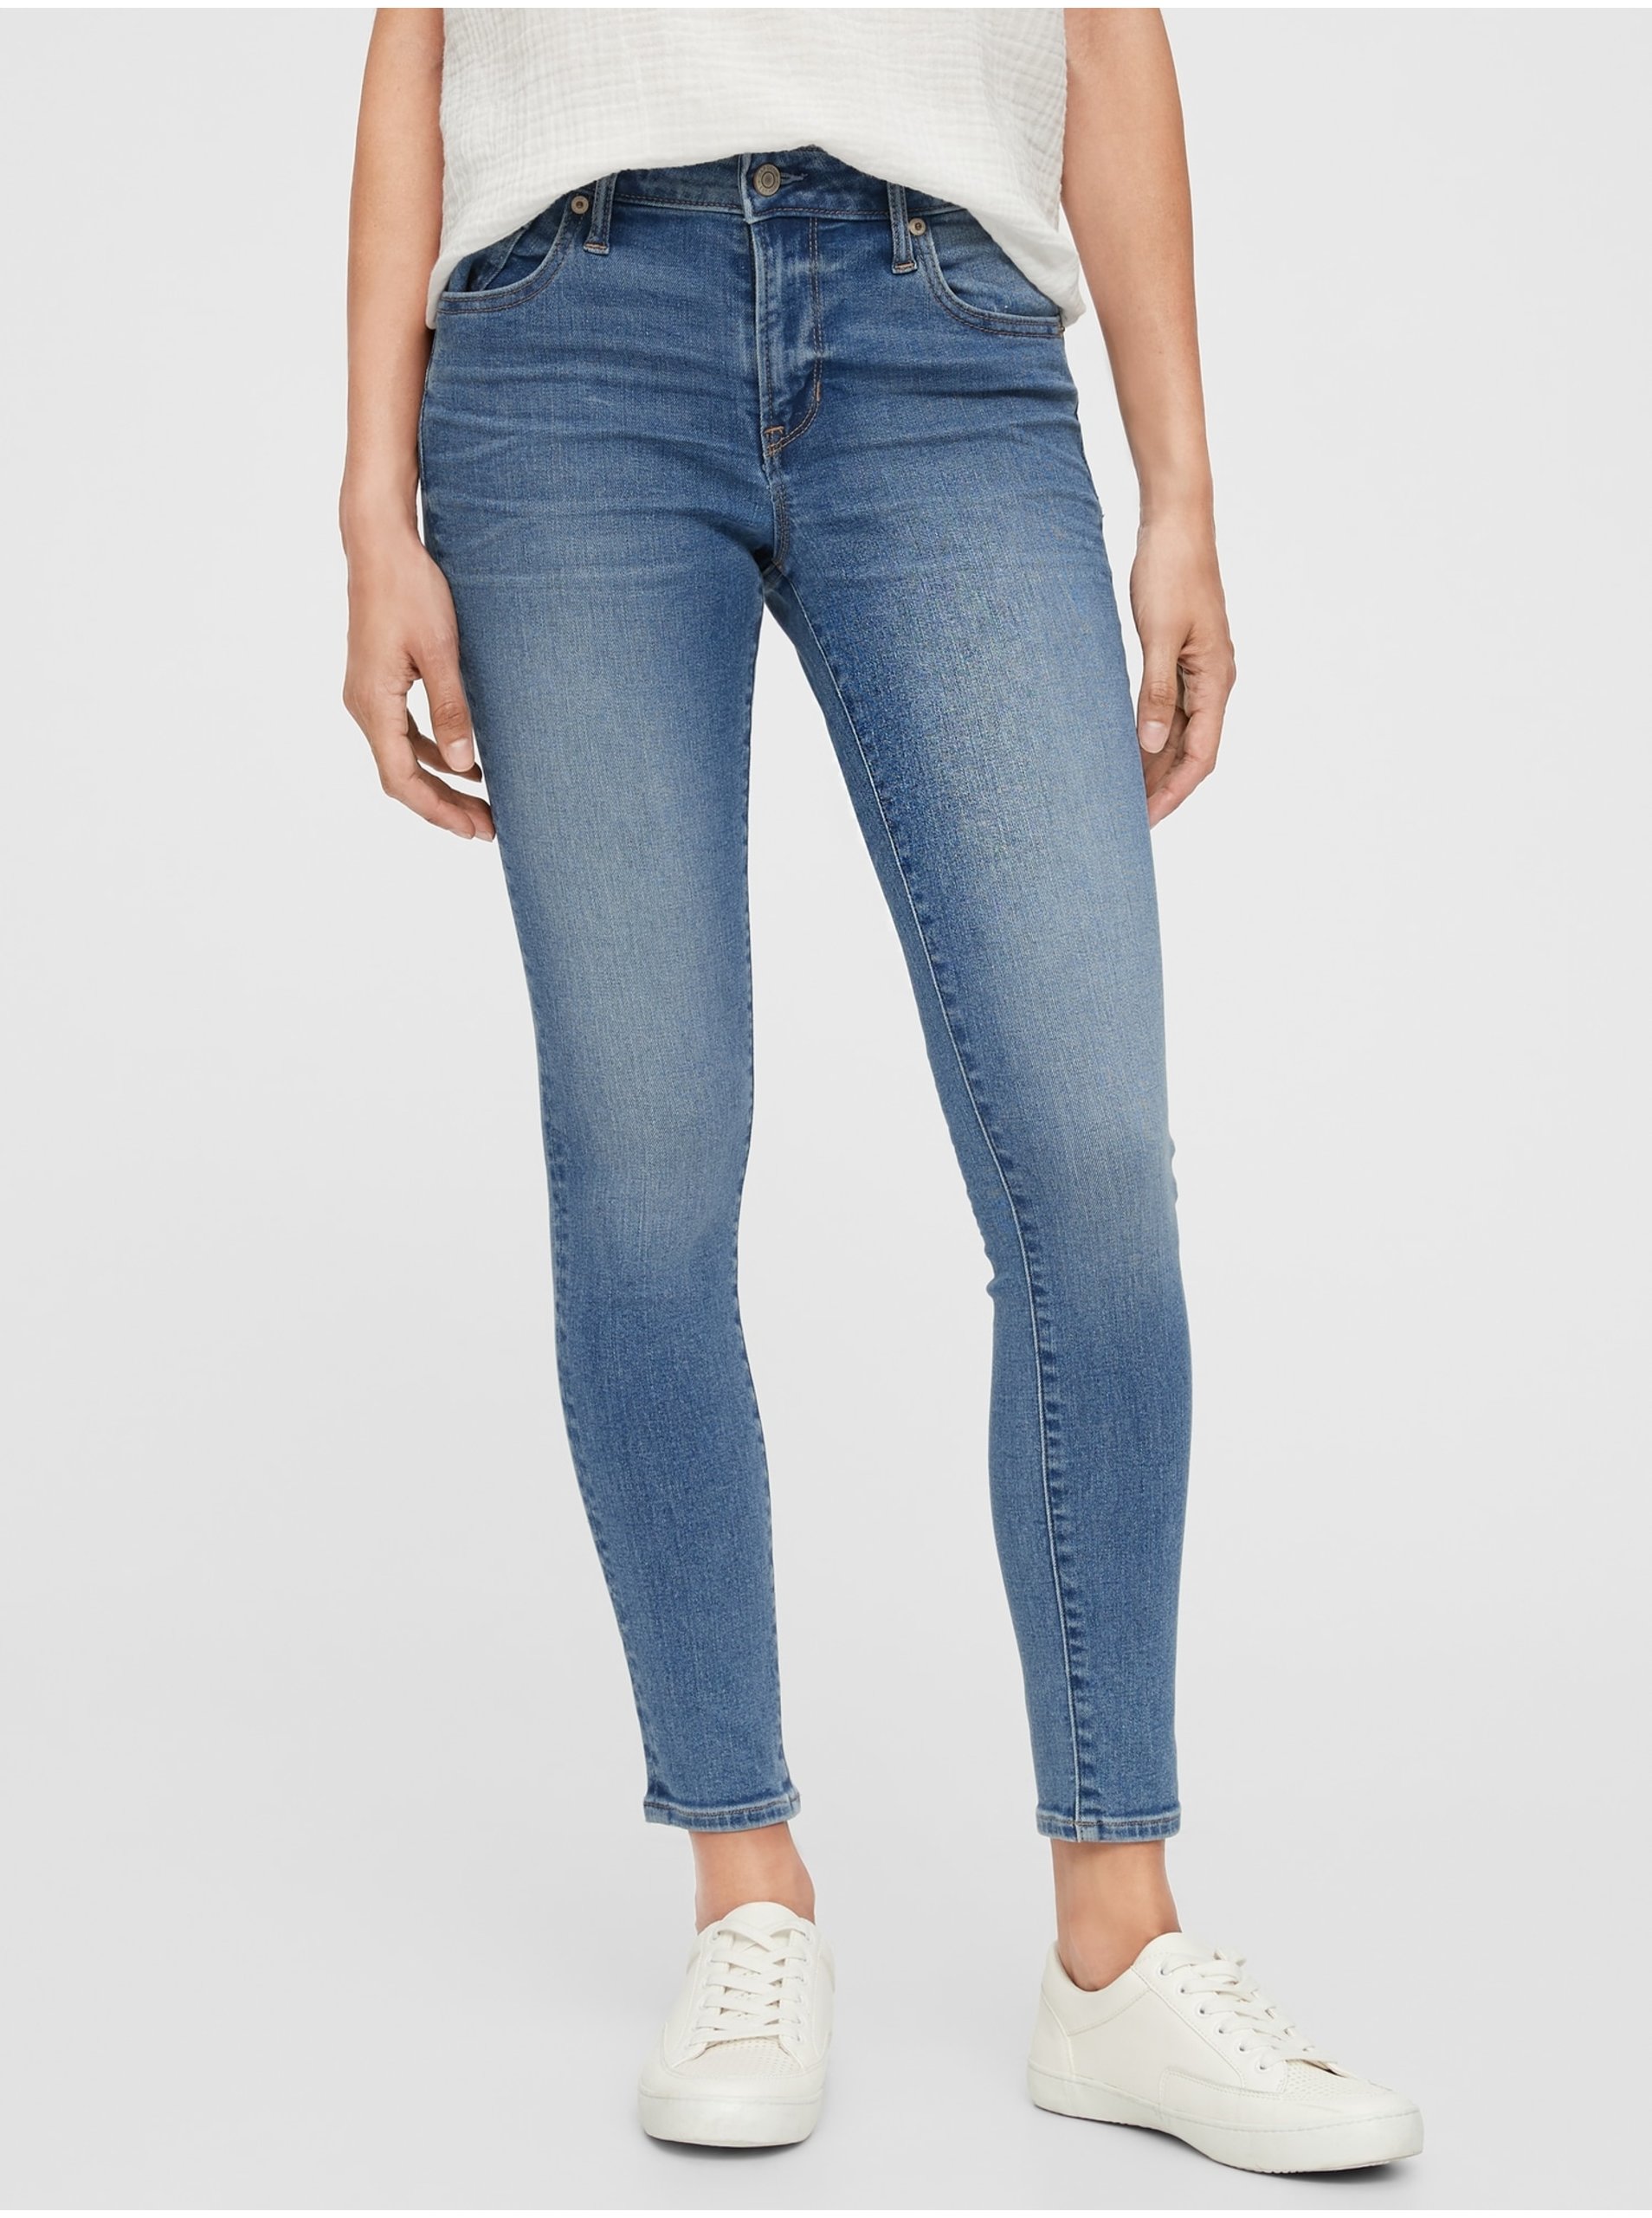 E-shop Modré dámské džíny mid rise universal legging jeans